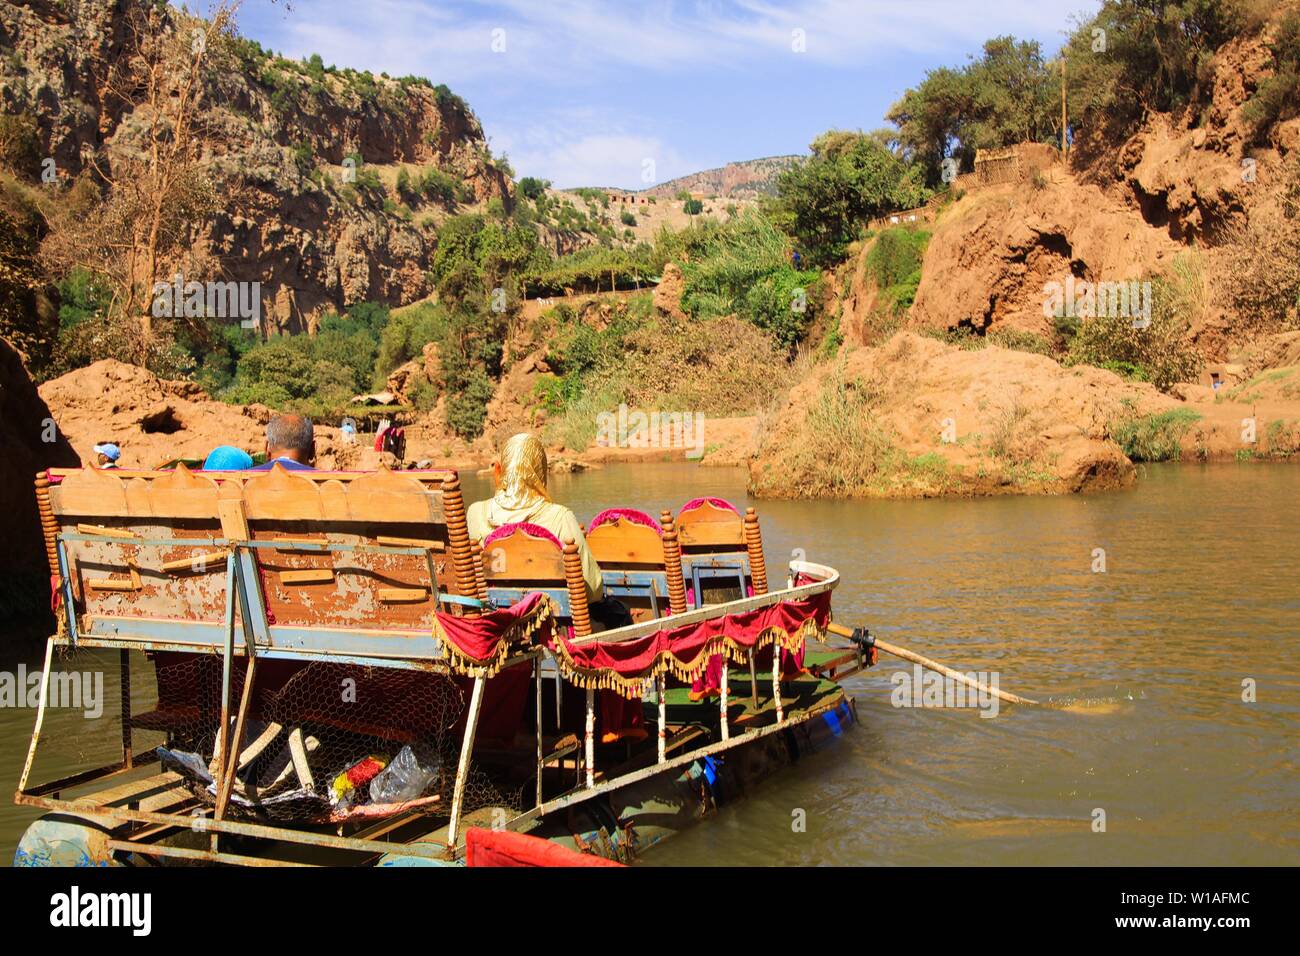 Vue sur la rivière dans la vallée de l'Ourika avec radeau colorés en bois et famille musulmane - Maroc Banque D'Images